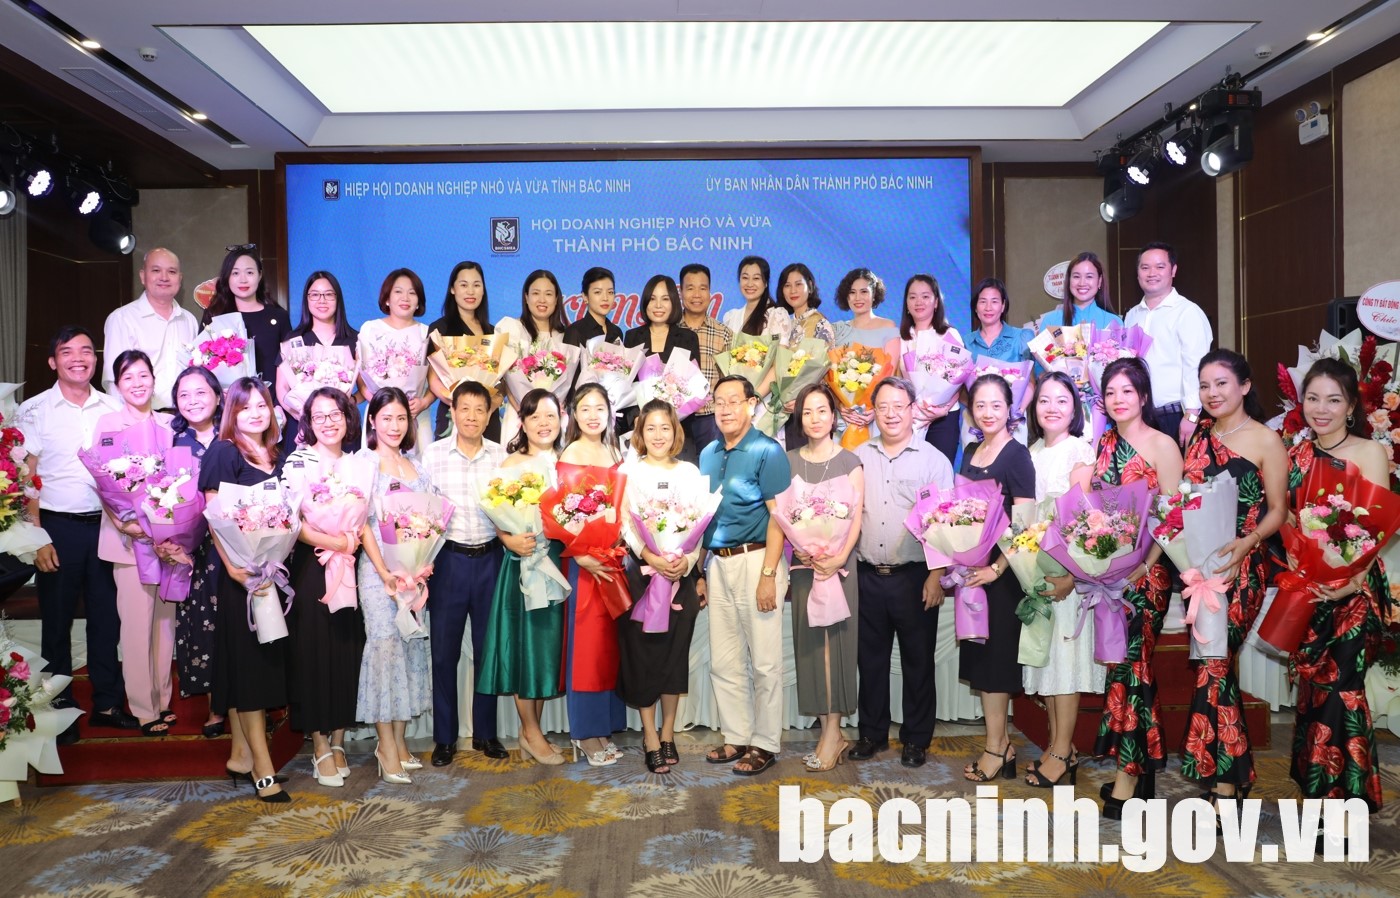 Hội Doanh nghiệp nhỏ và vừa thành phố Bắc Ninh gặp mặt kỷ niệm Ngày Doanh nhân và Ngày Phụ nữ Việt Nam